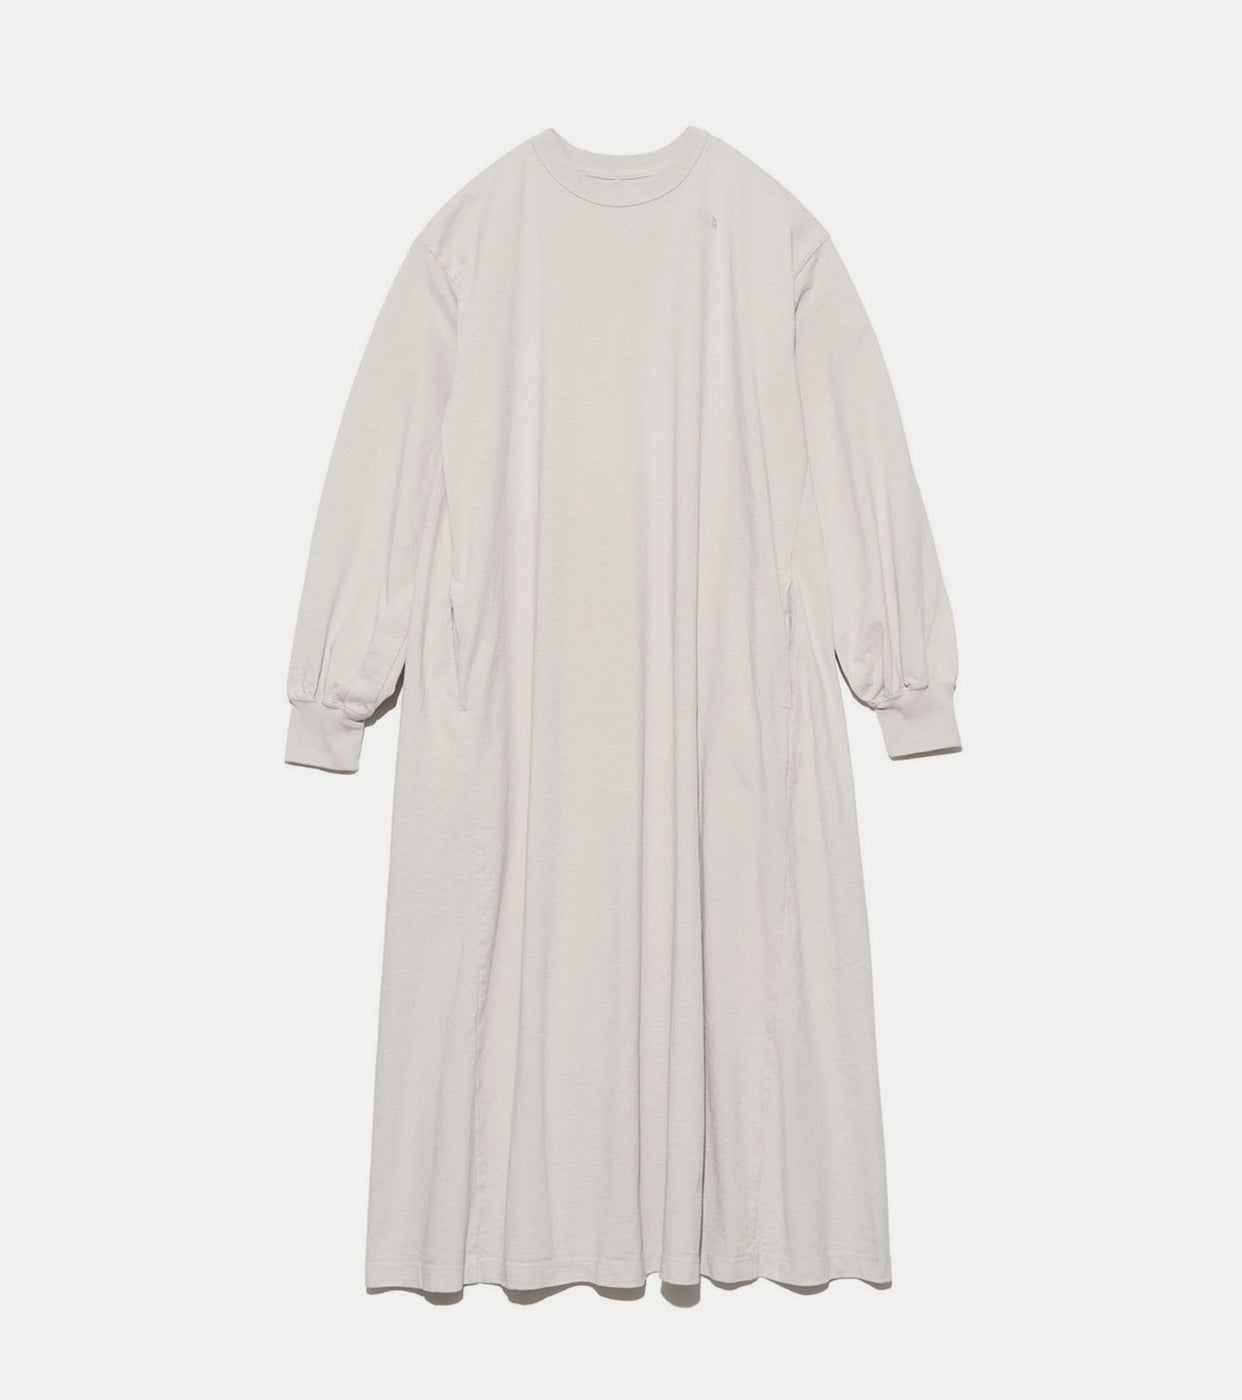 5.5 oz Long Sleeve Dress, Gray Beige